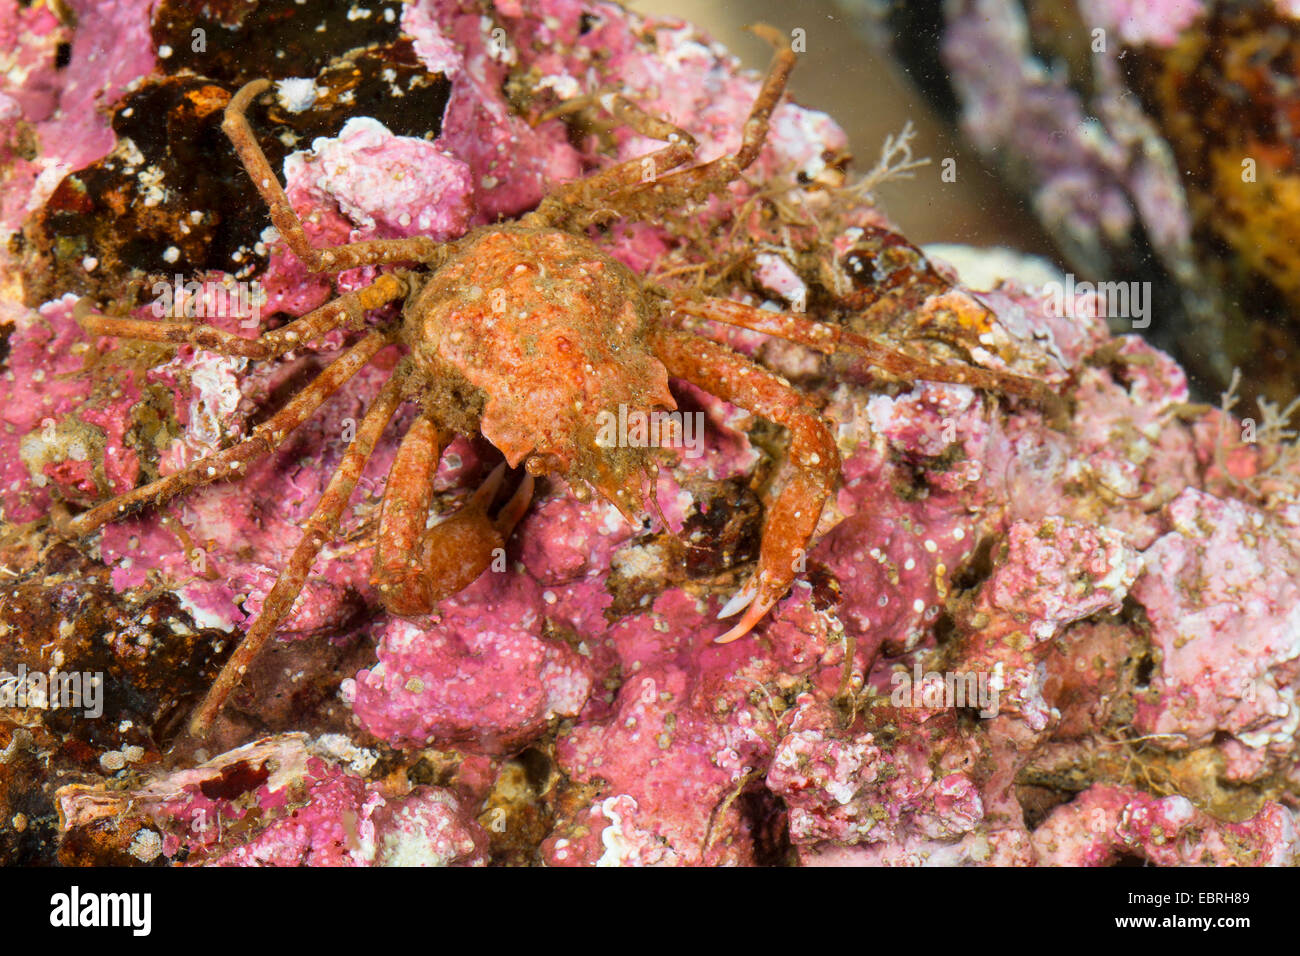 Crabe Lyre arctique sous contrat, crabe, araignée crabe, araignée de mer (Hyas coarctatus, Hyas serratus), vue du dessus Banque D'Images